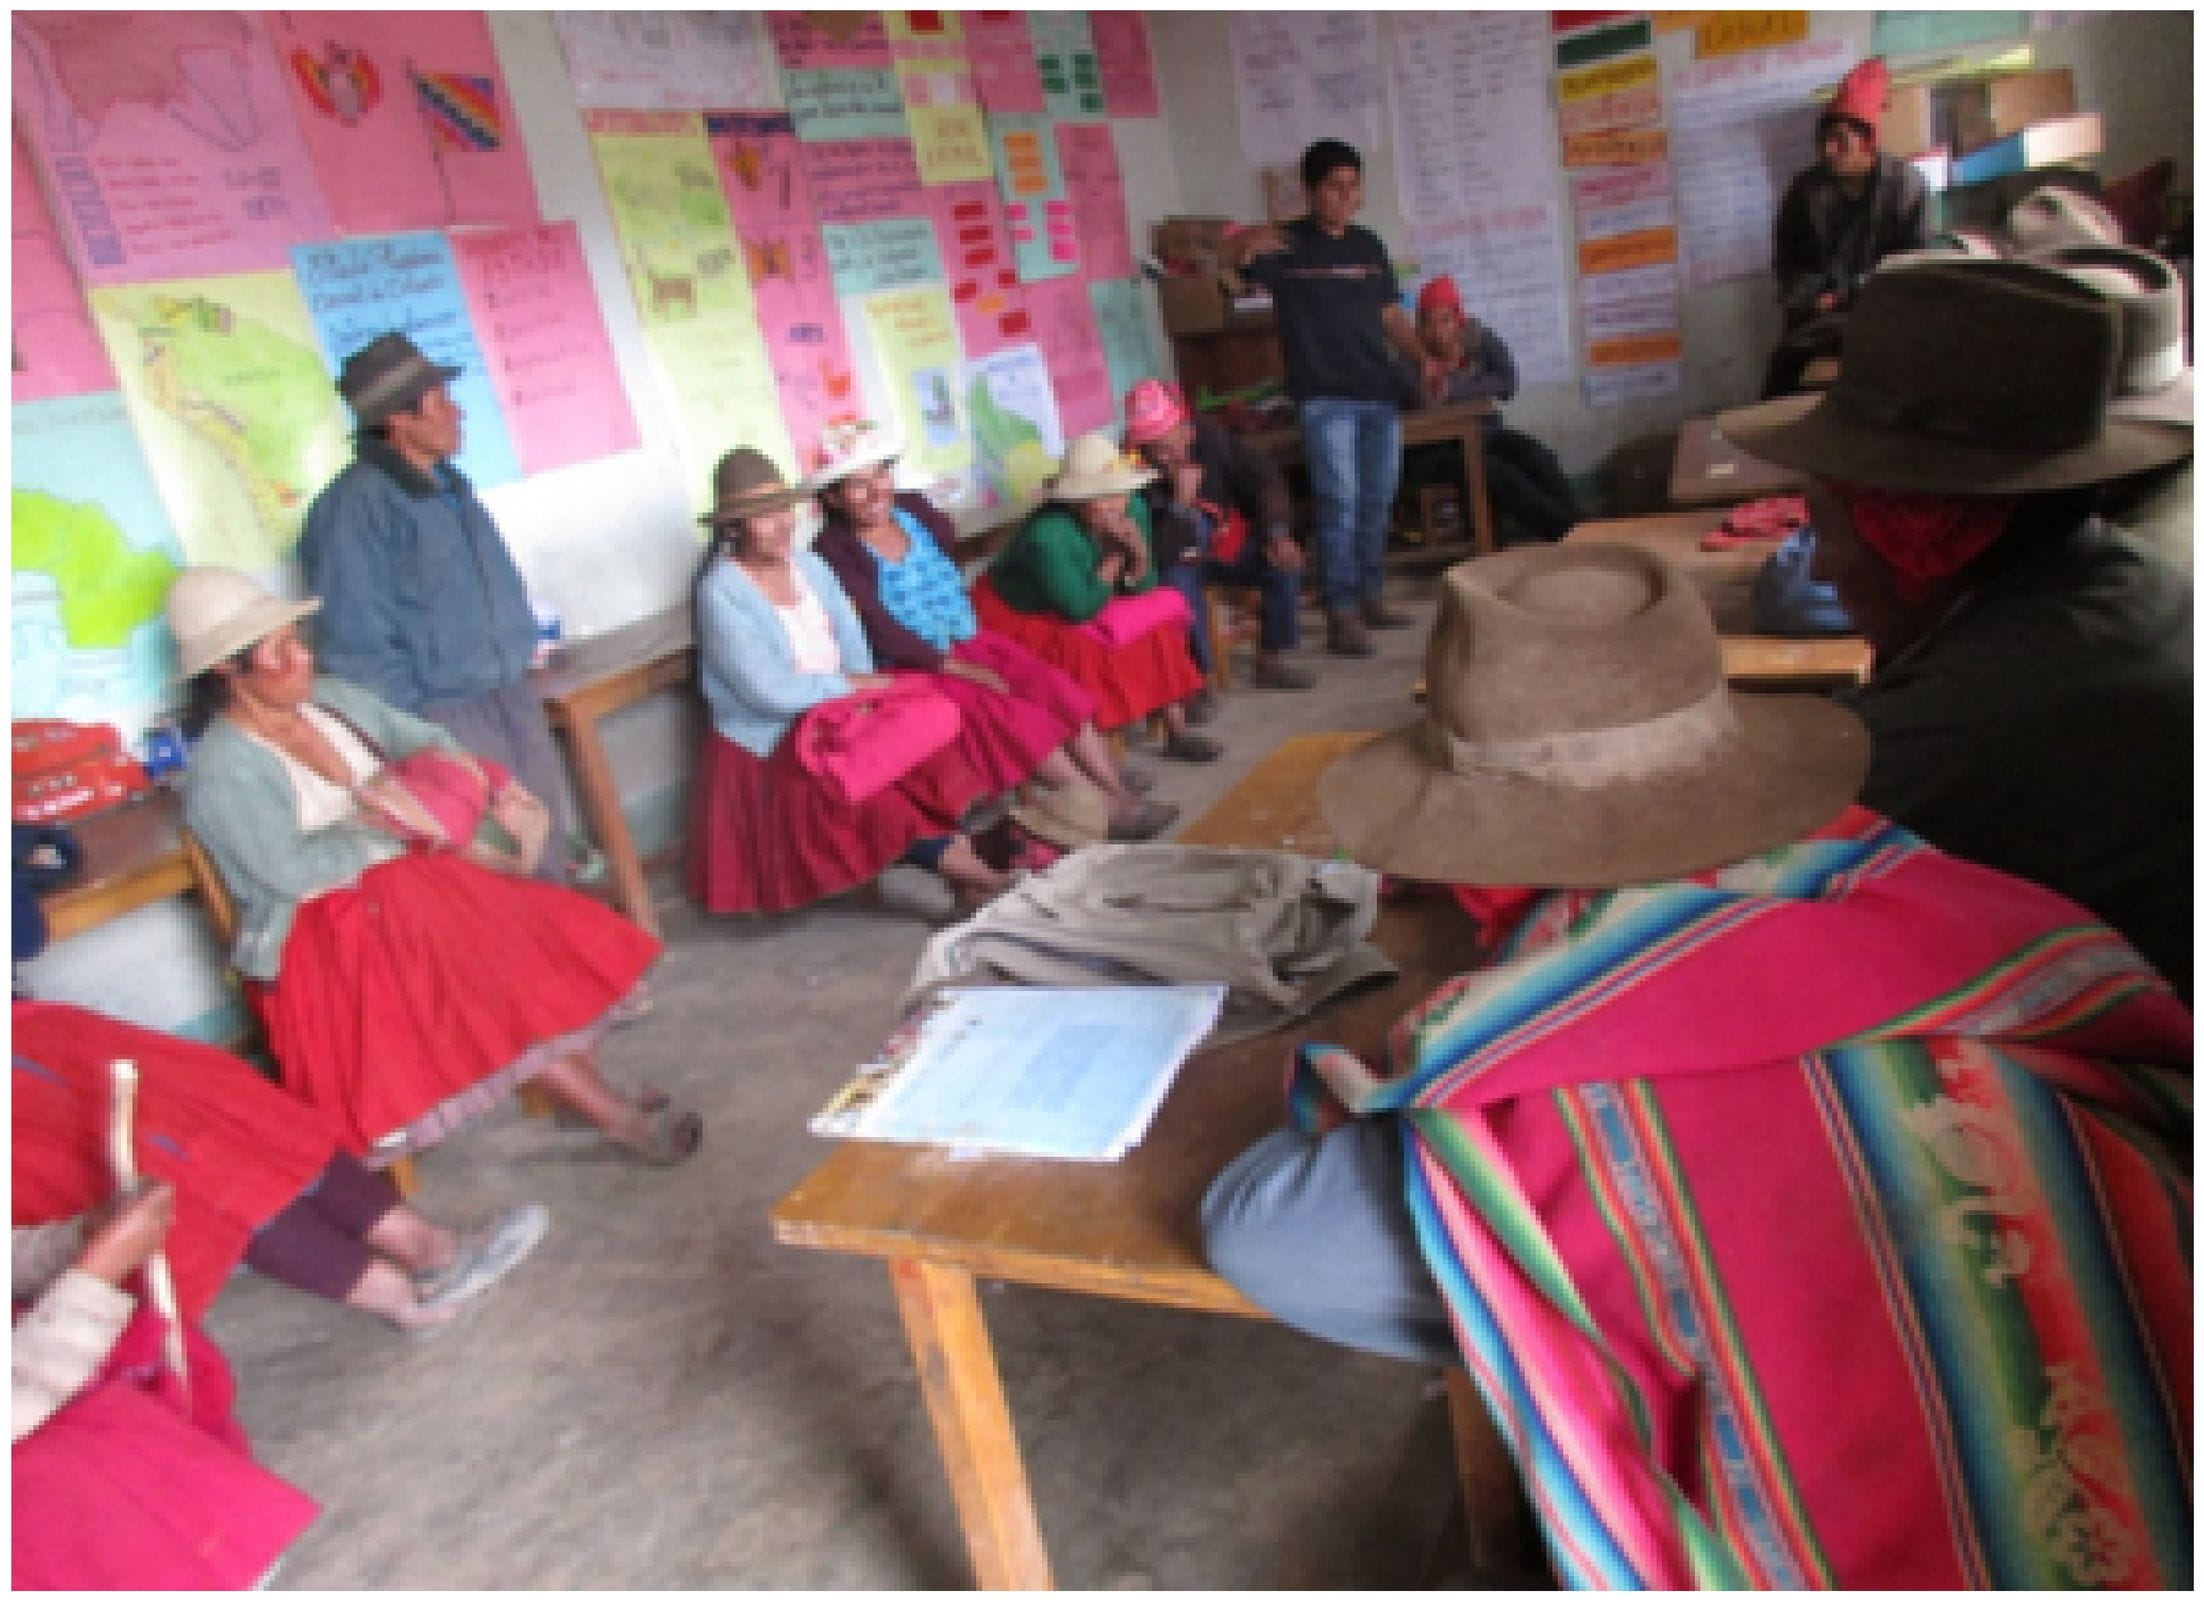 Eltern bei einem Workshop in einer bolivianischen Schule. (Quelle: Lisa Carl)